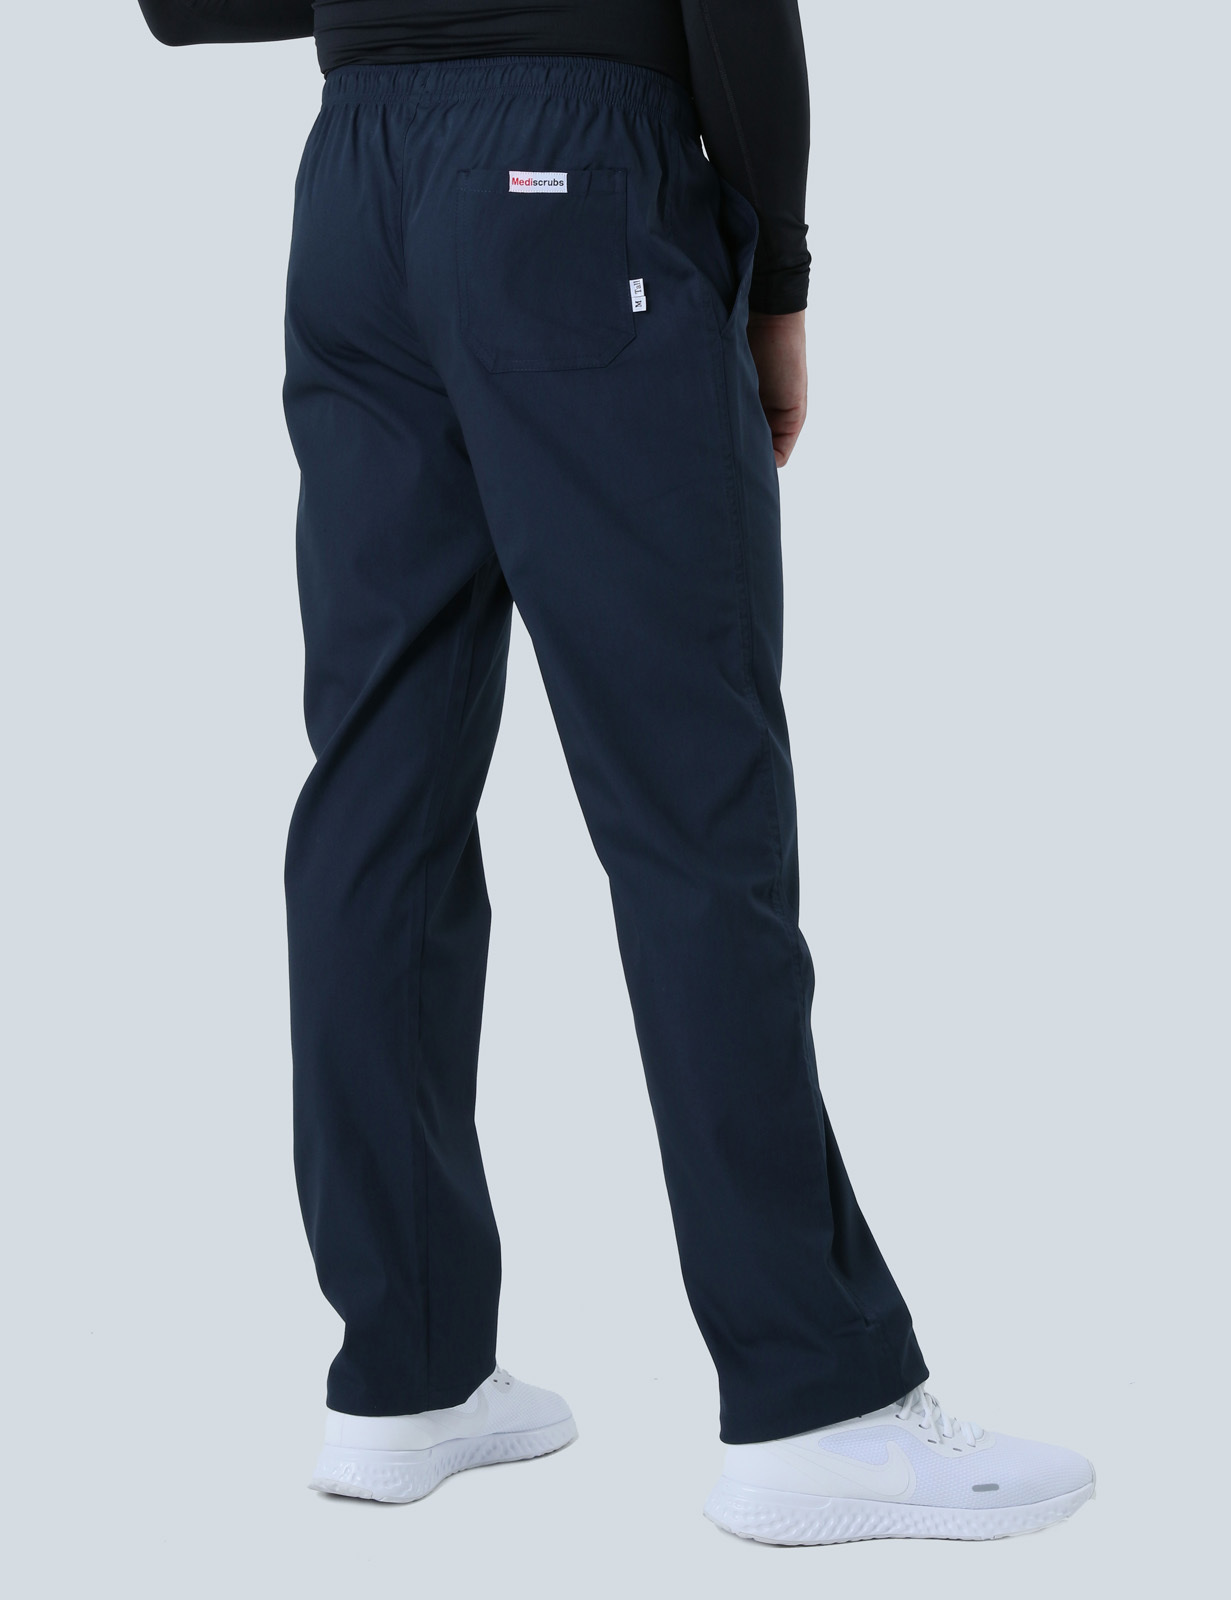 Men's Regular Cut Pants - Navy - Large - Tall - 3